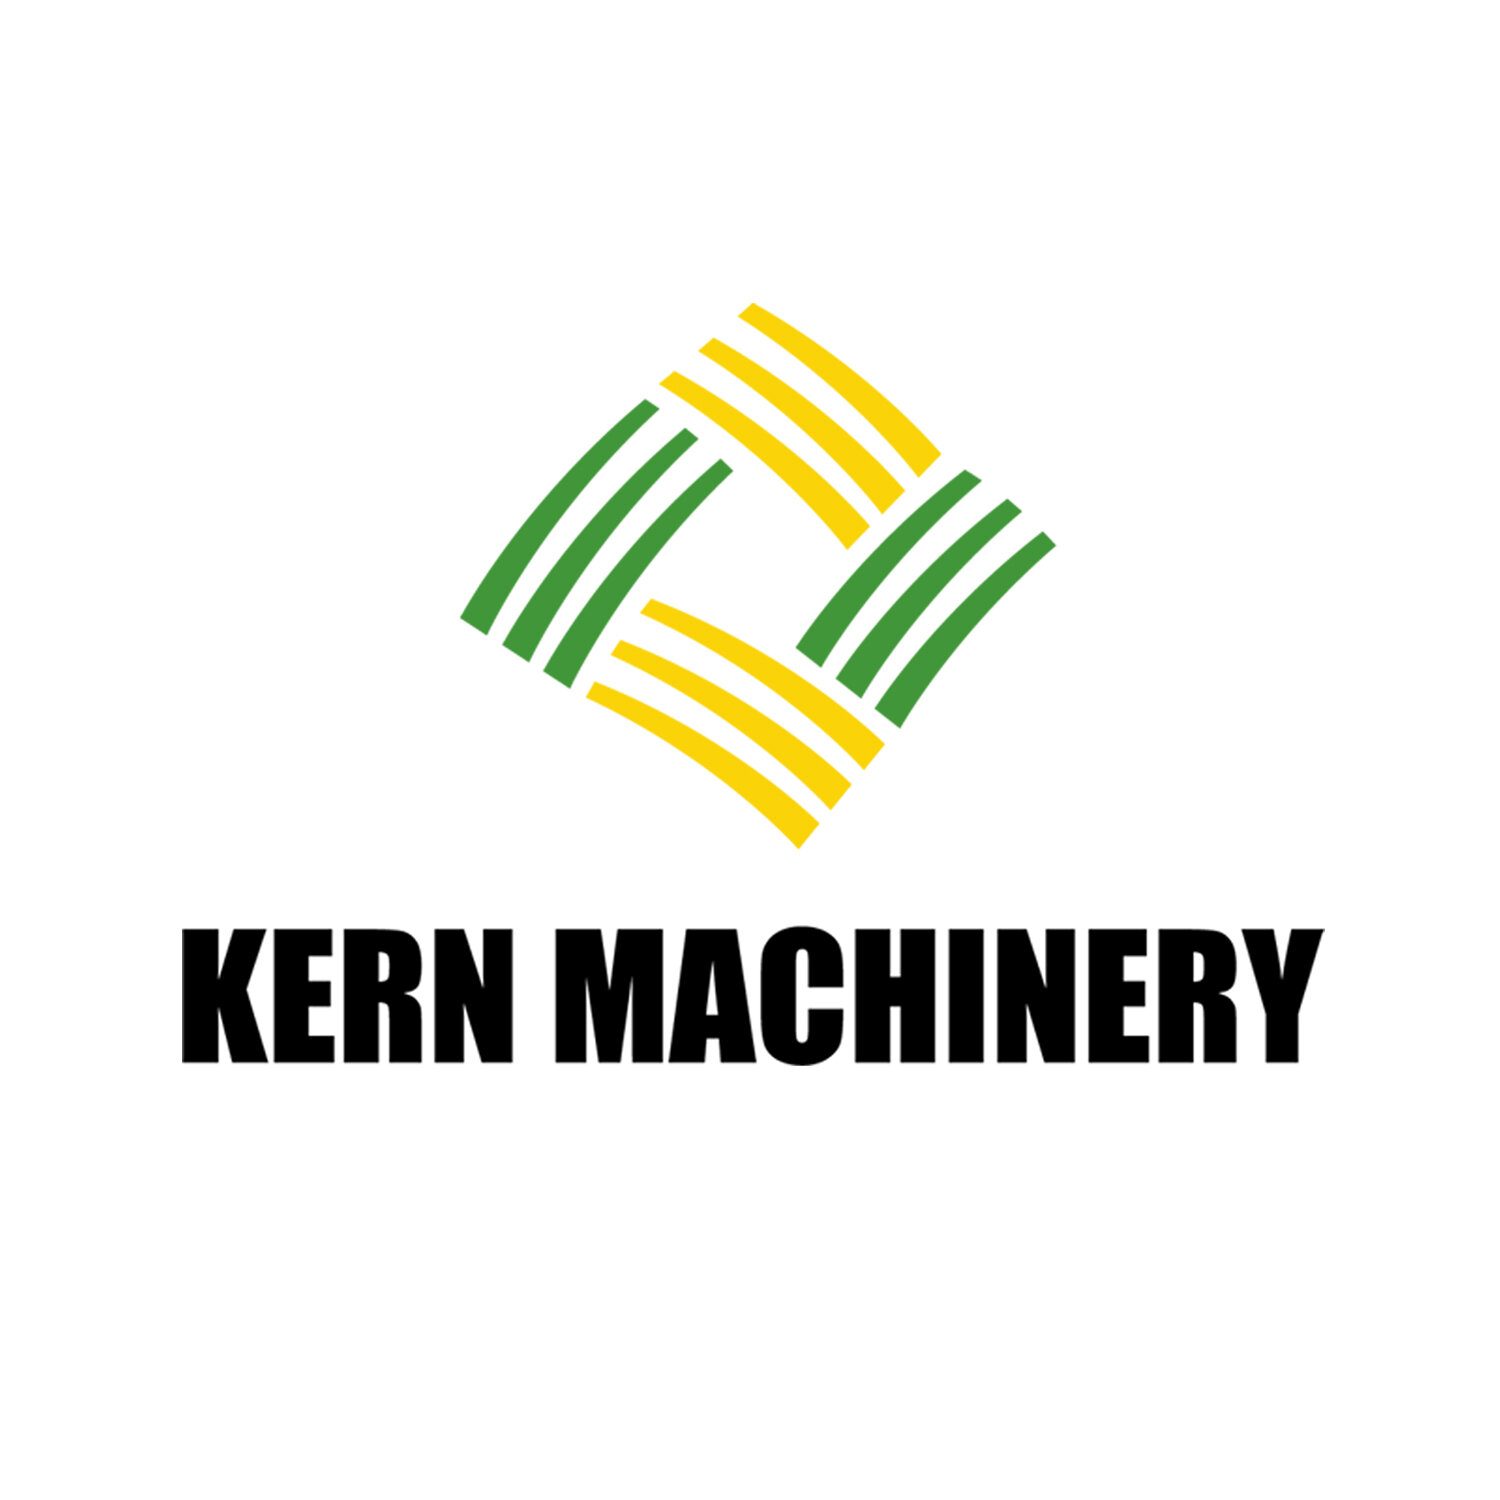 KernMachinery.jpg